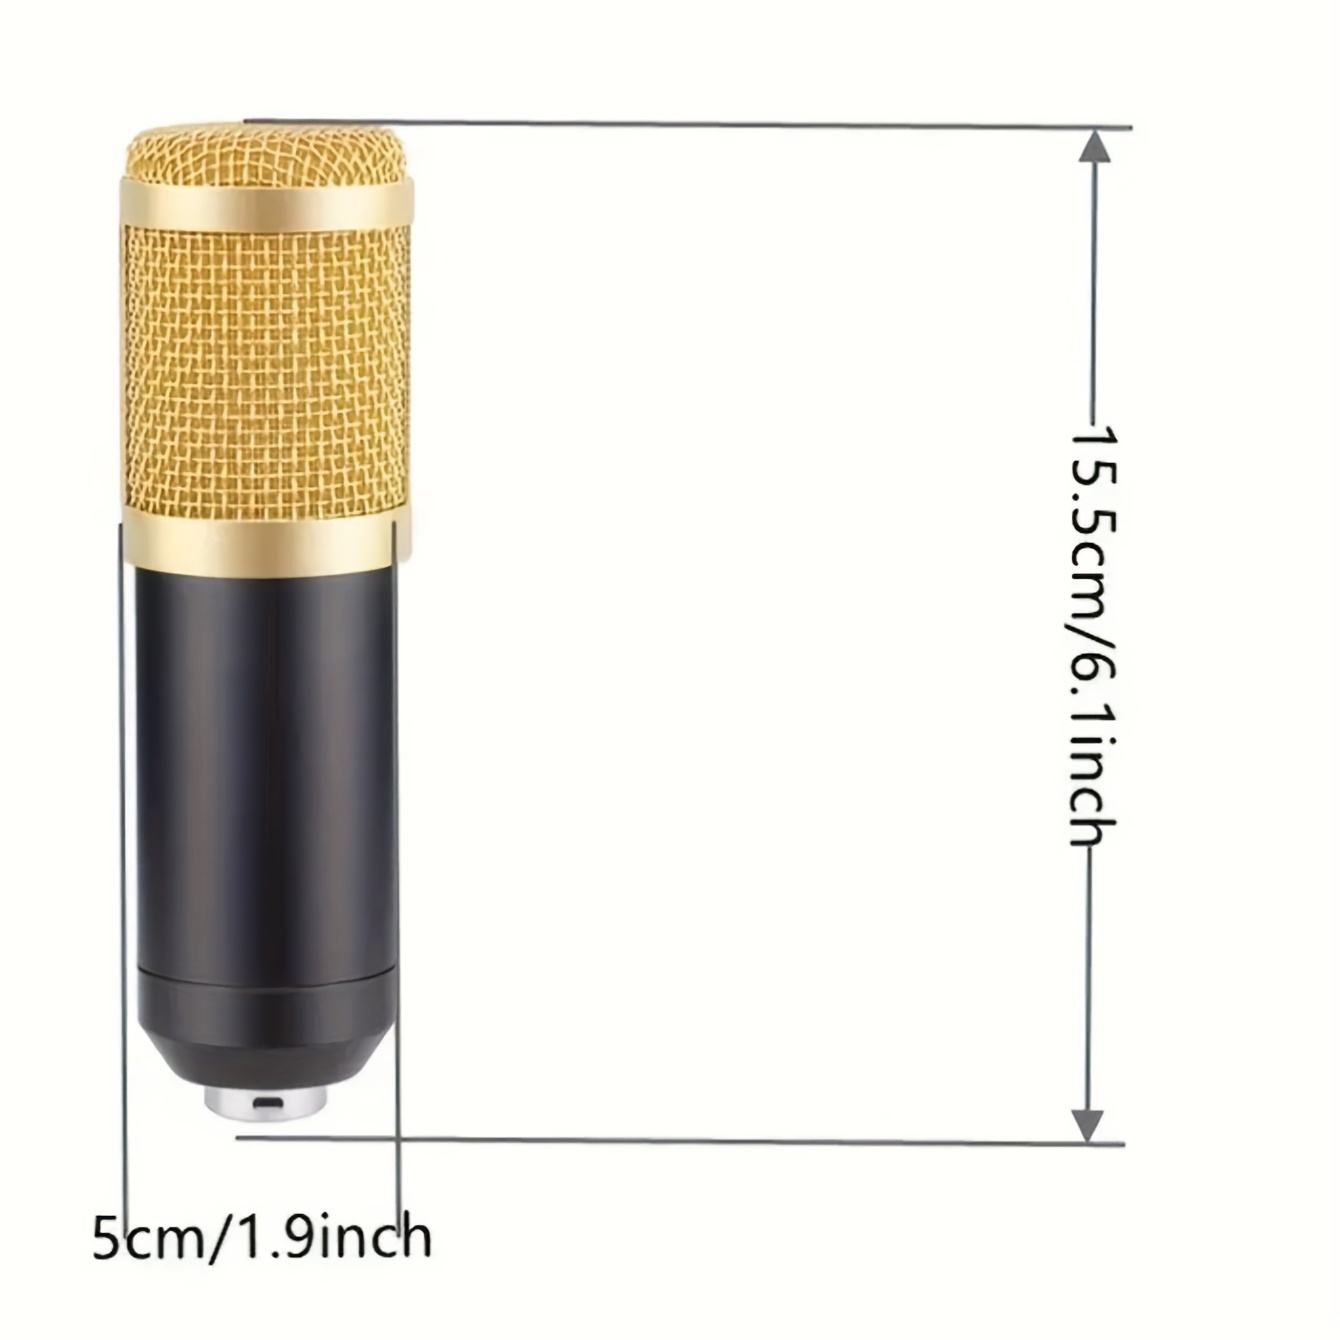 Podcast Equipment Bundle, BM-800 Podcast Microphone Bundle-Voice